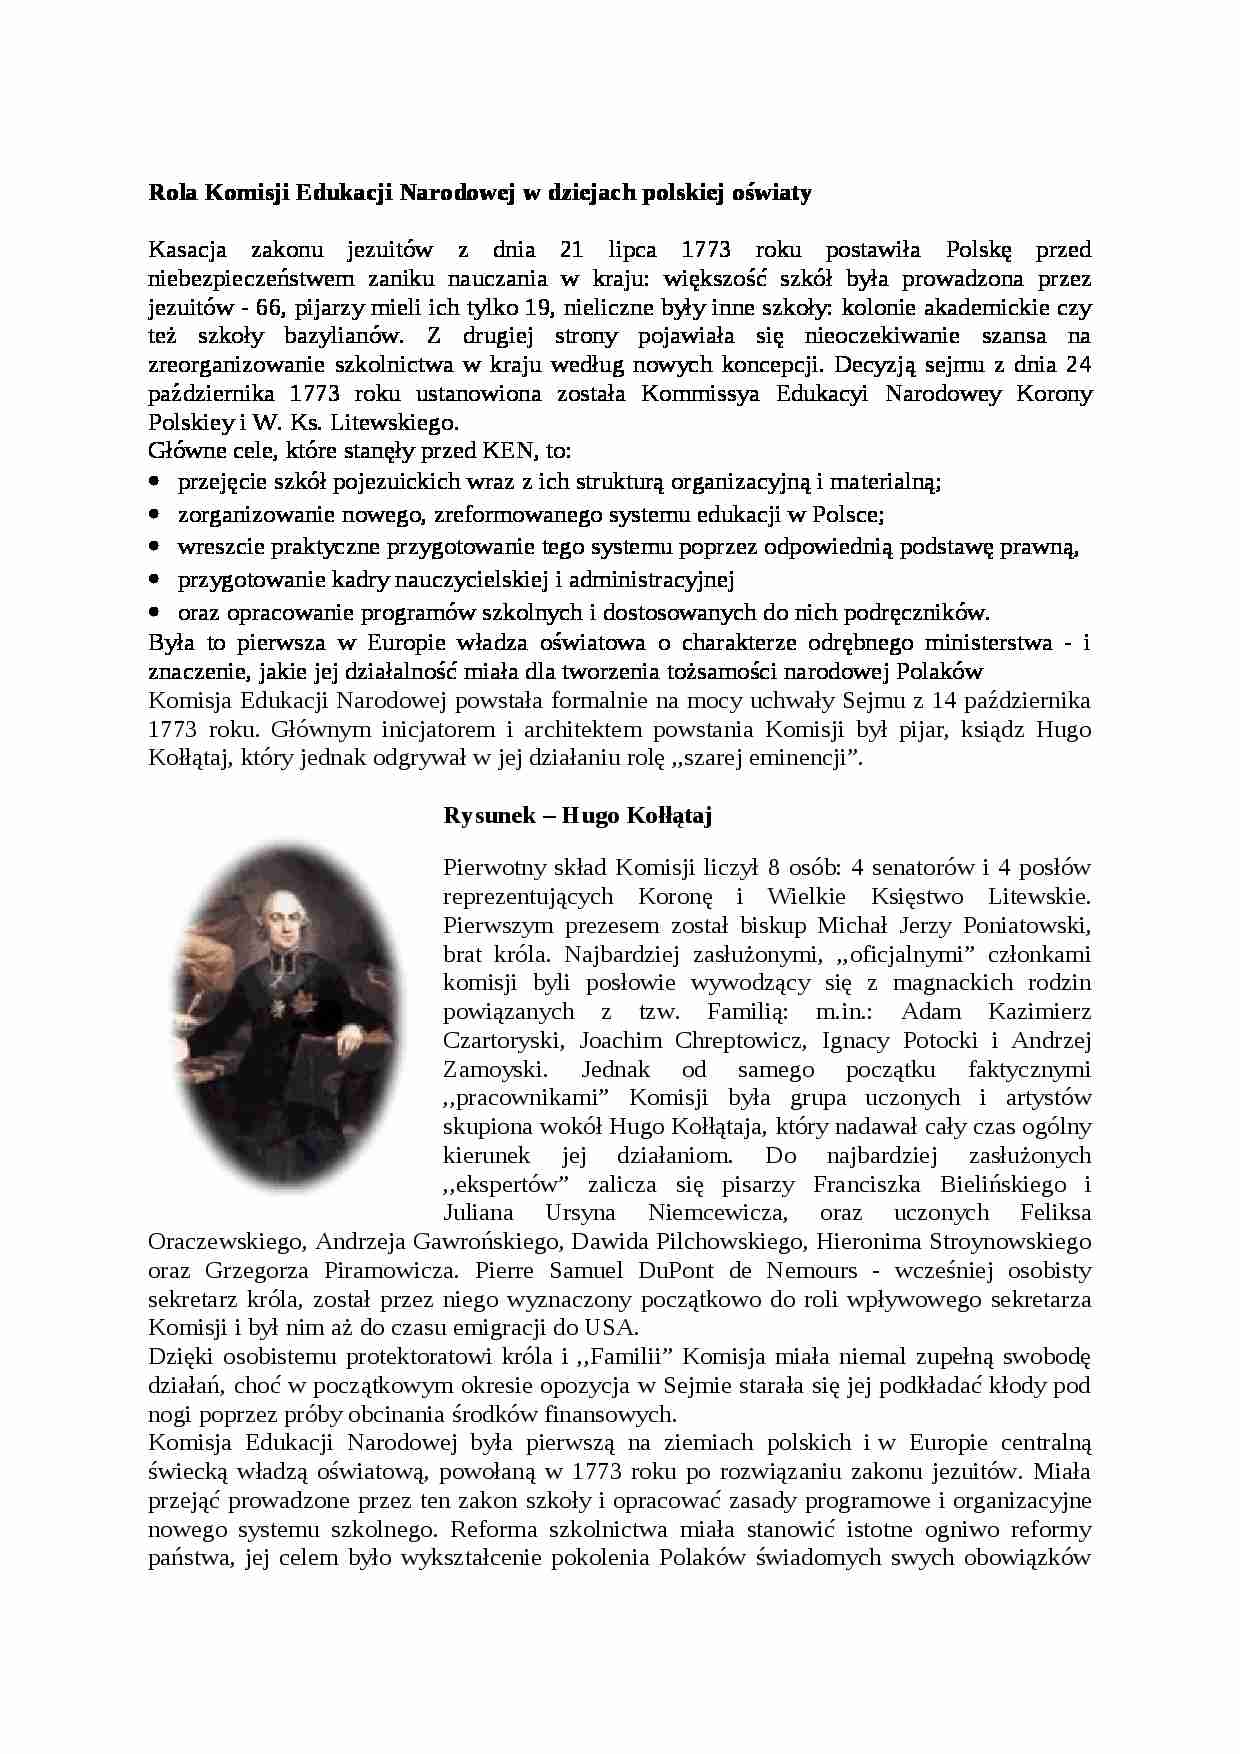 Rola Komisji Edukacji Narodowej w dziejach polskiej oświaty- pedagogika - strona 1